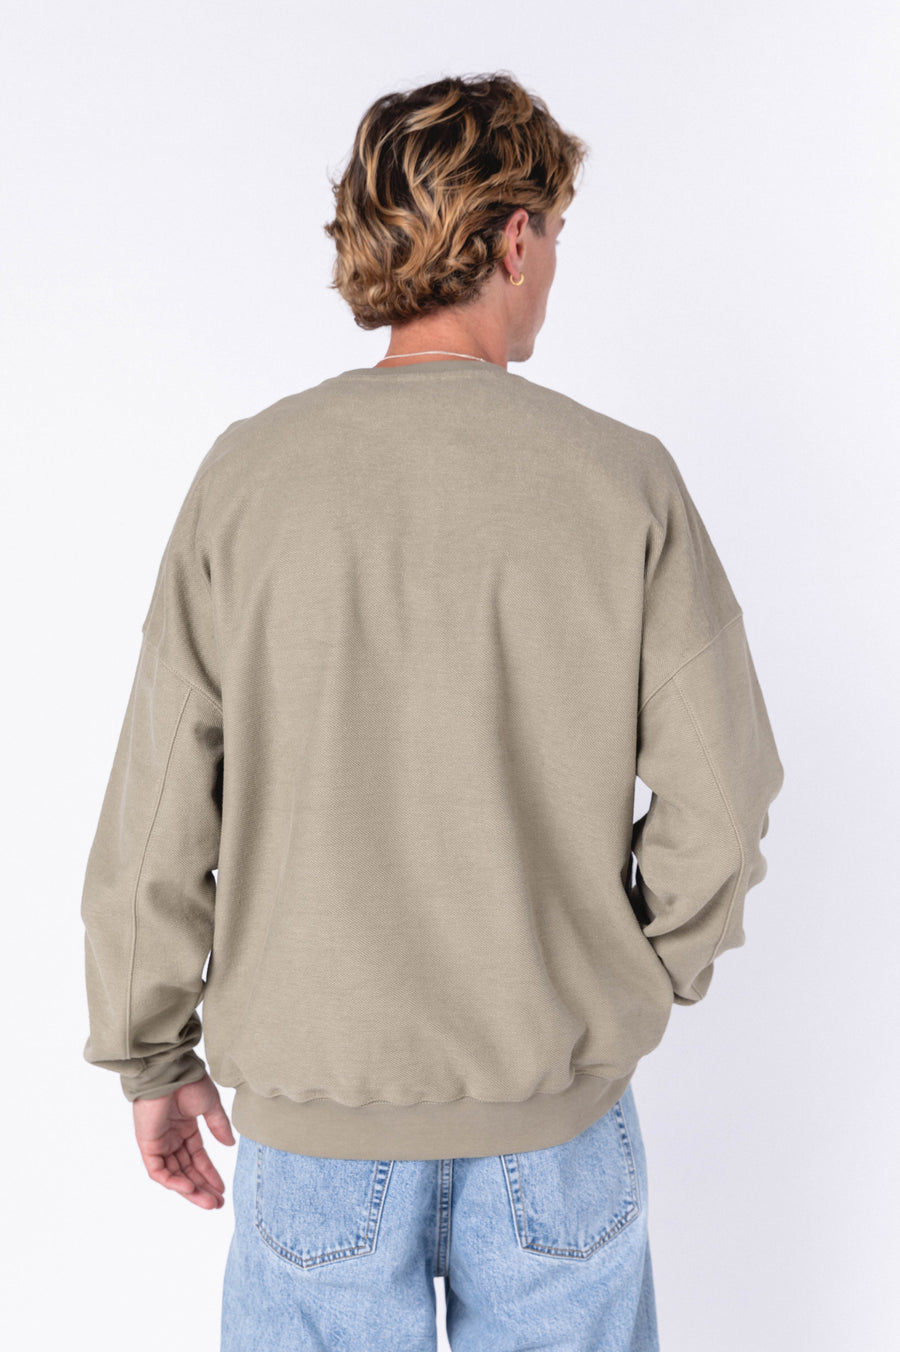 Philly Worker Sweatshirt - Sage Loopback - Final Sale